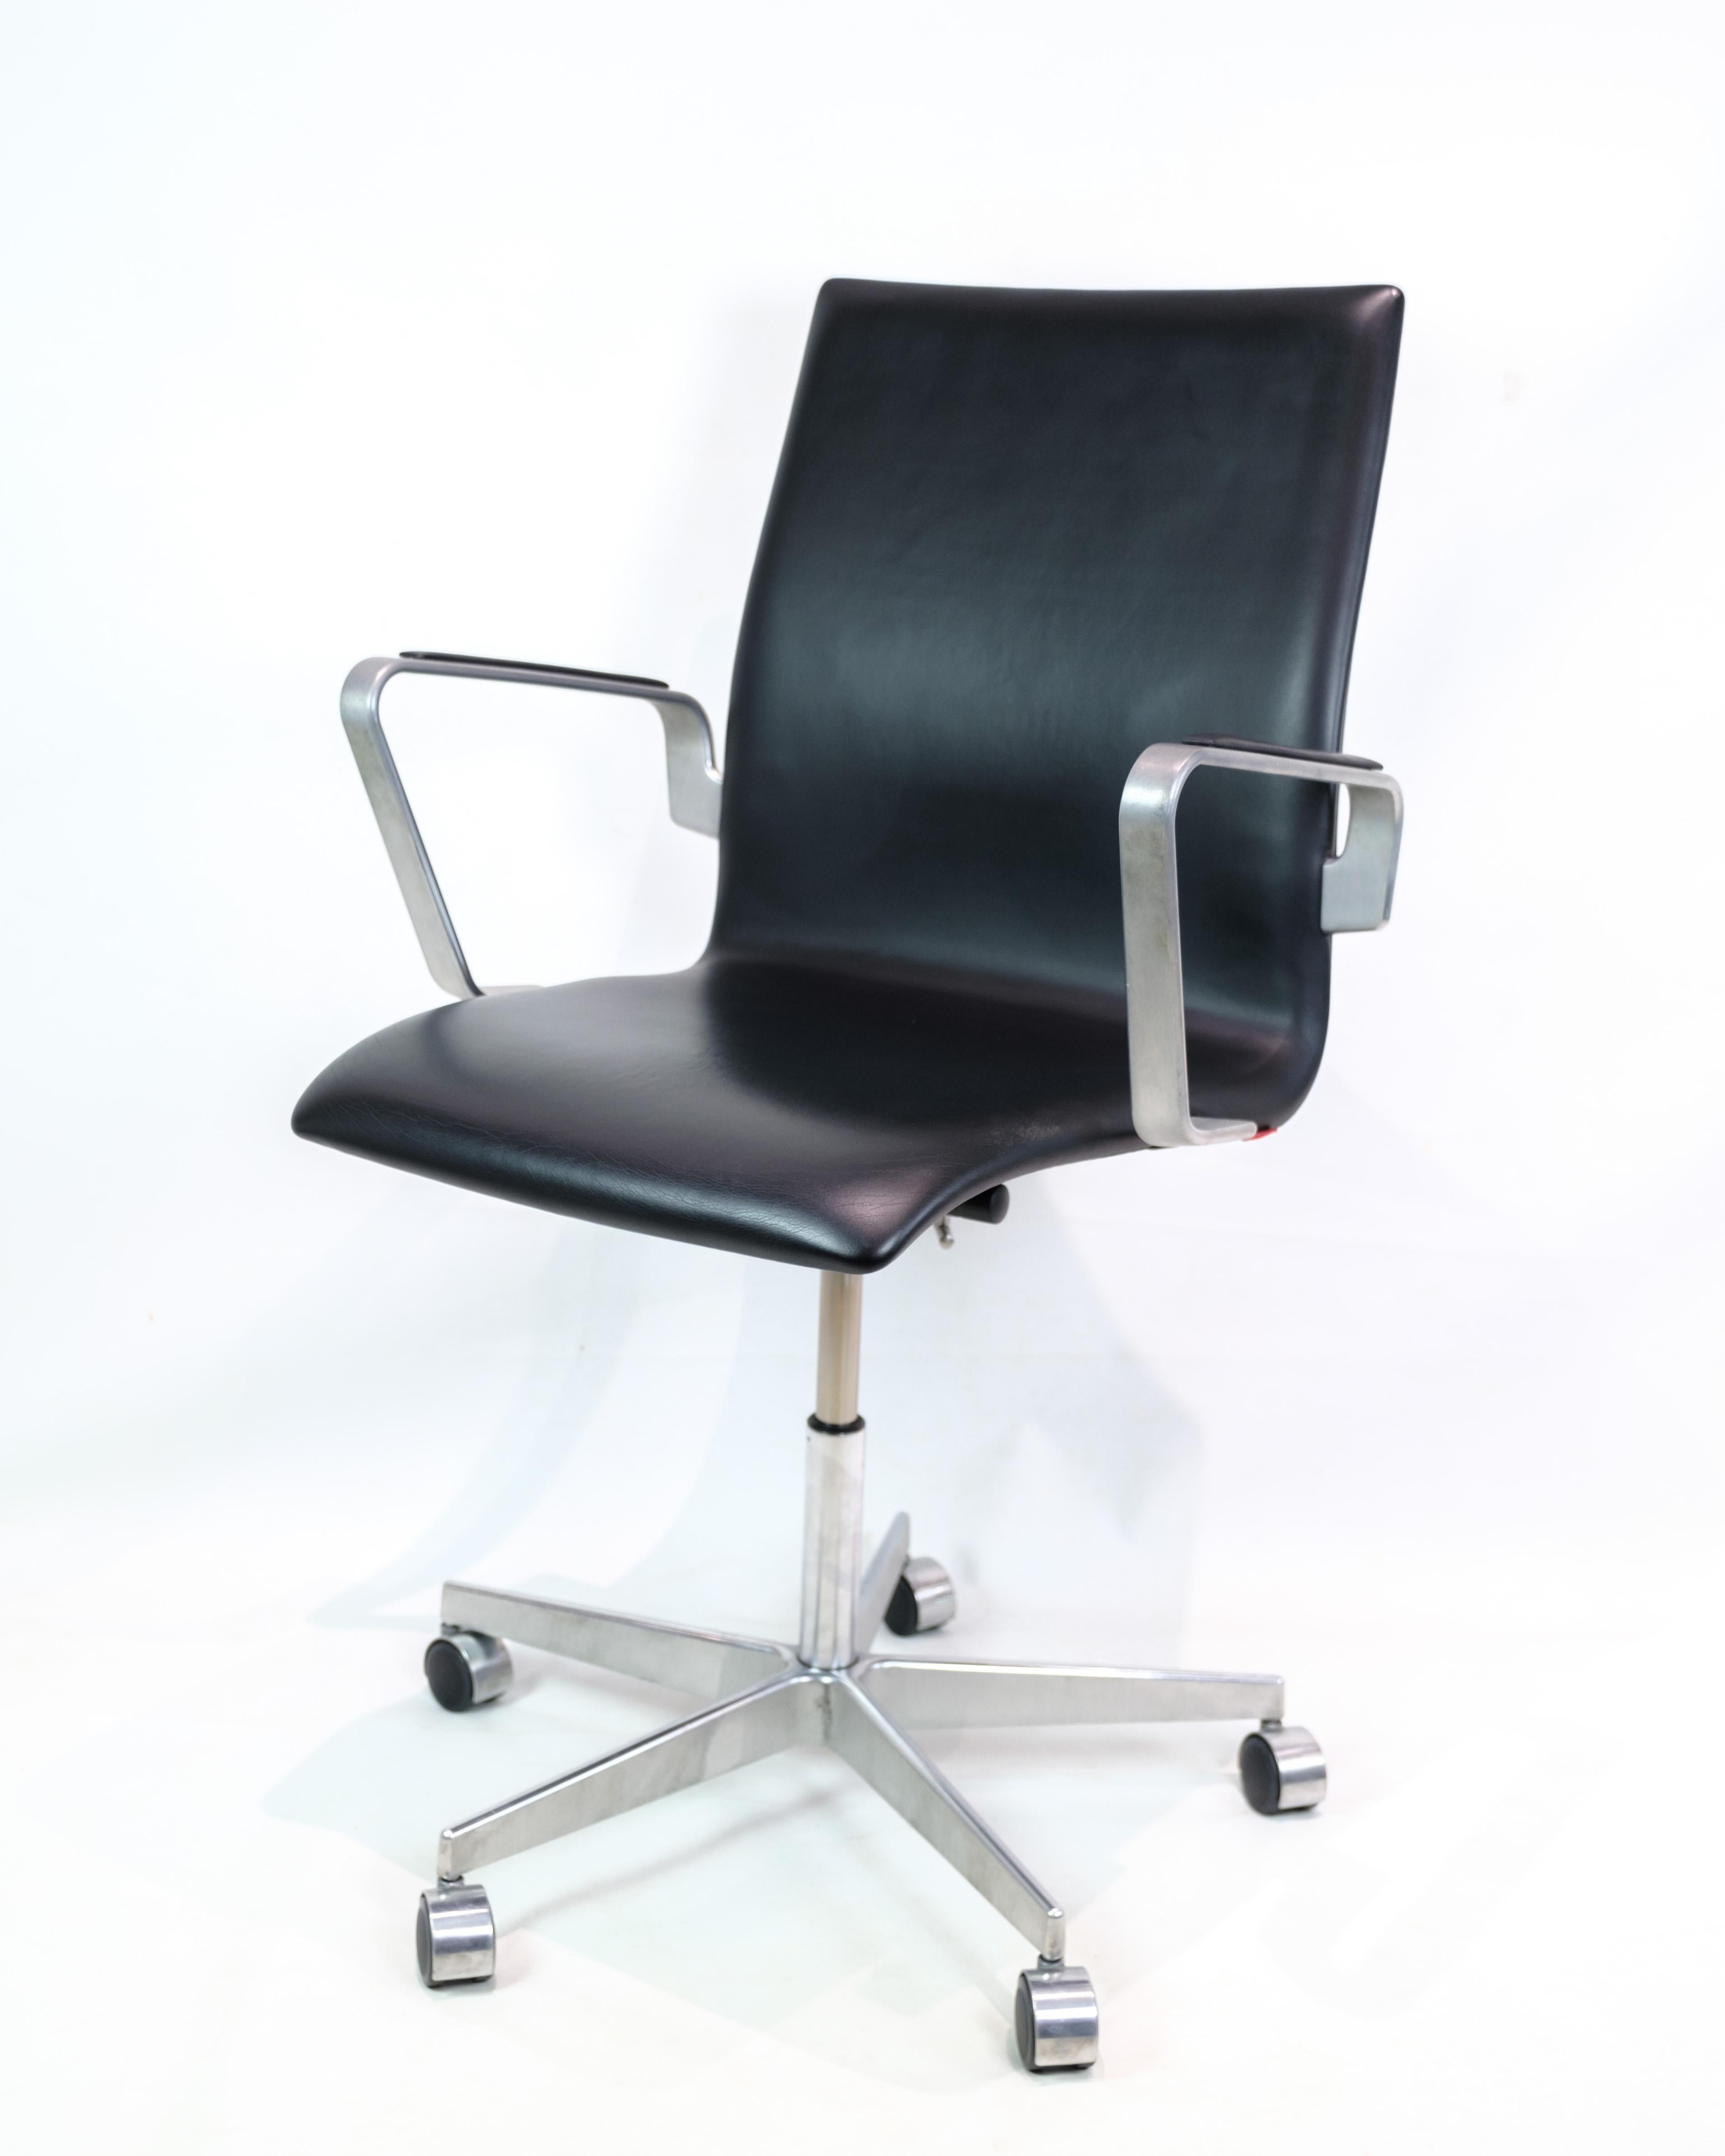 Cette chaise Desk est une représentation classique de l'héritage du design danois des années 1980. Le modèle, connu sous le nom de 3271W Oxford, a été conçu par le célèbre Arne Jacobsen et produit par Fritz Hansen. La chaise présente une esthétique